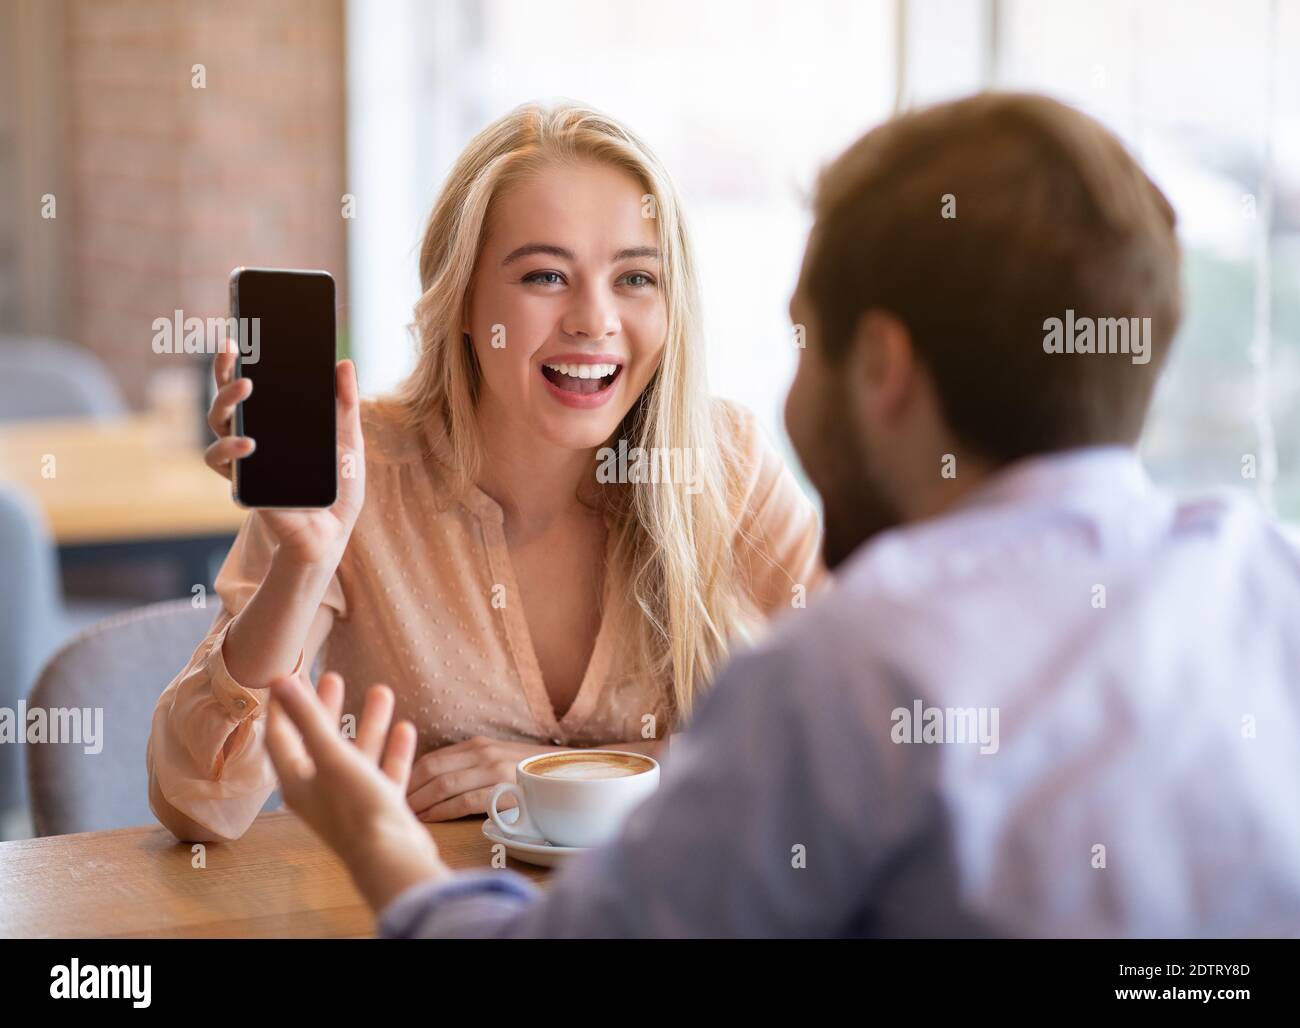 Alegre joven mostrando a su novio smartphone con pantalla vacía en la cafetería, se burla por el diseño Foto de stock